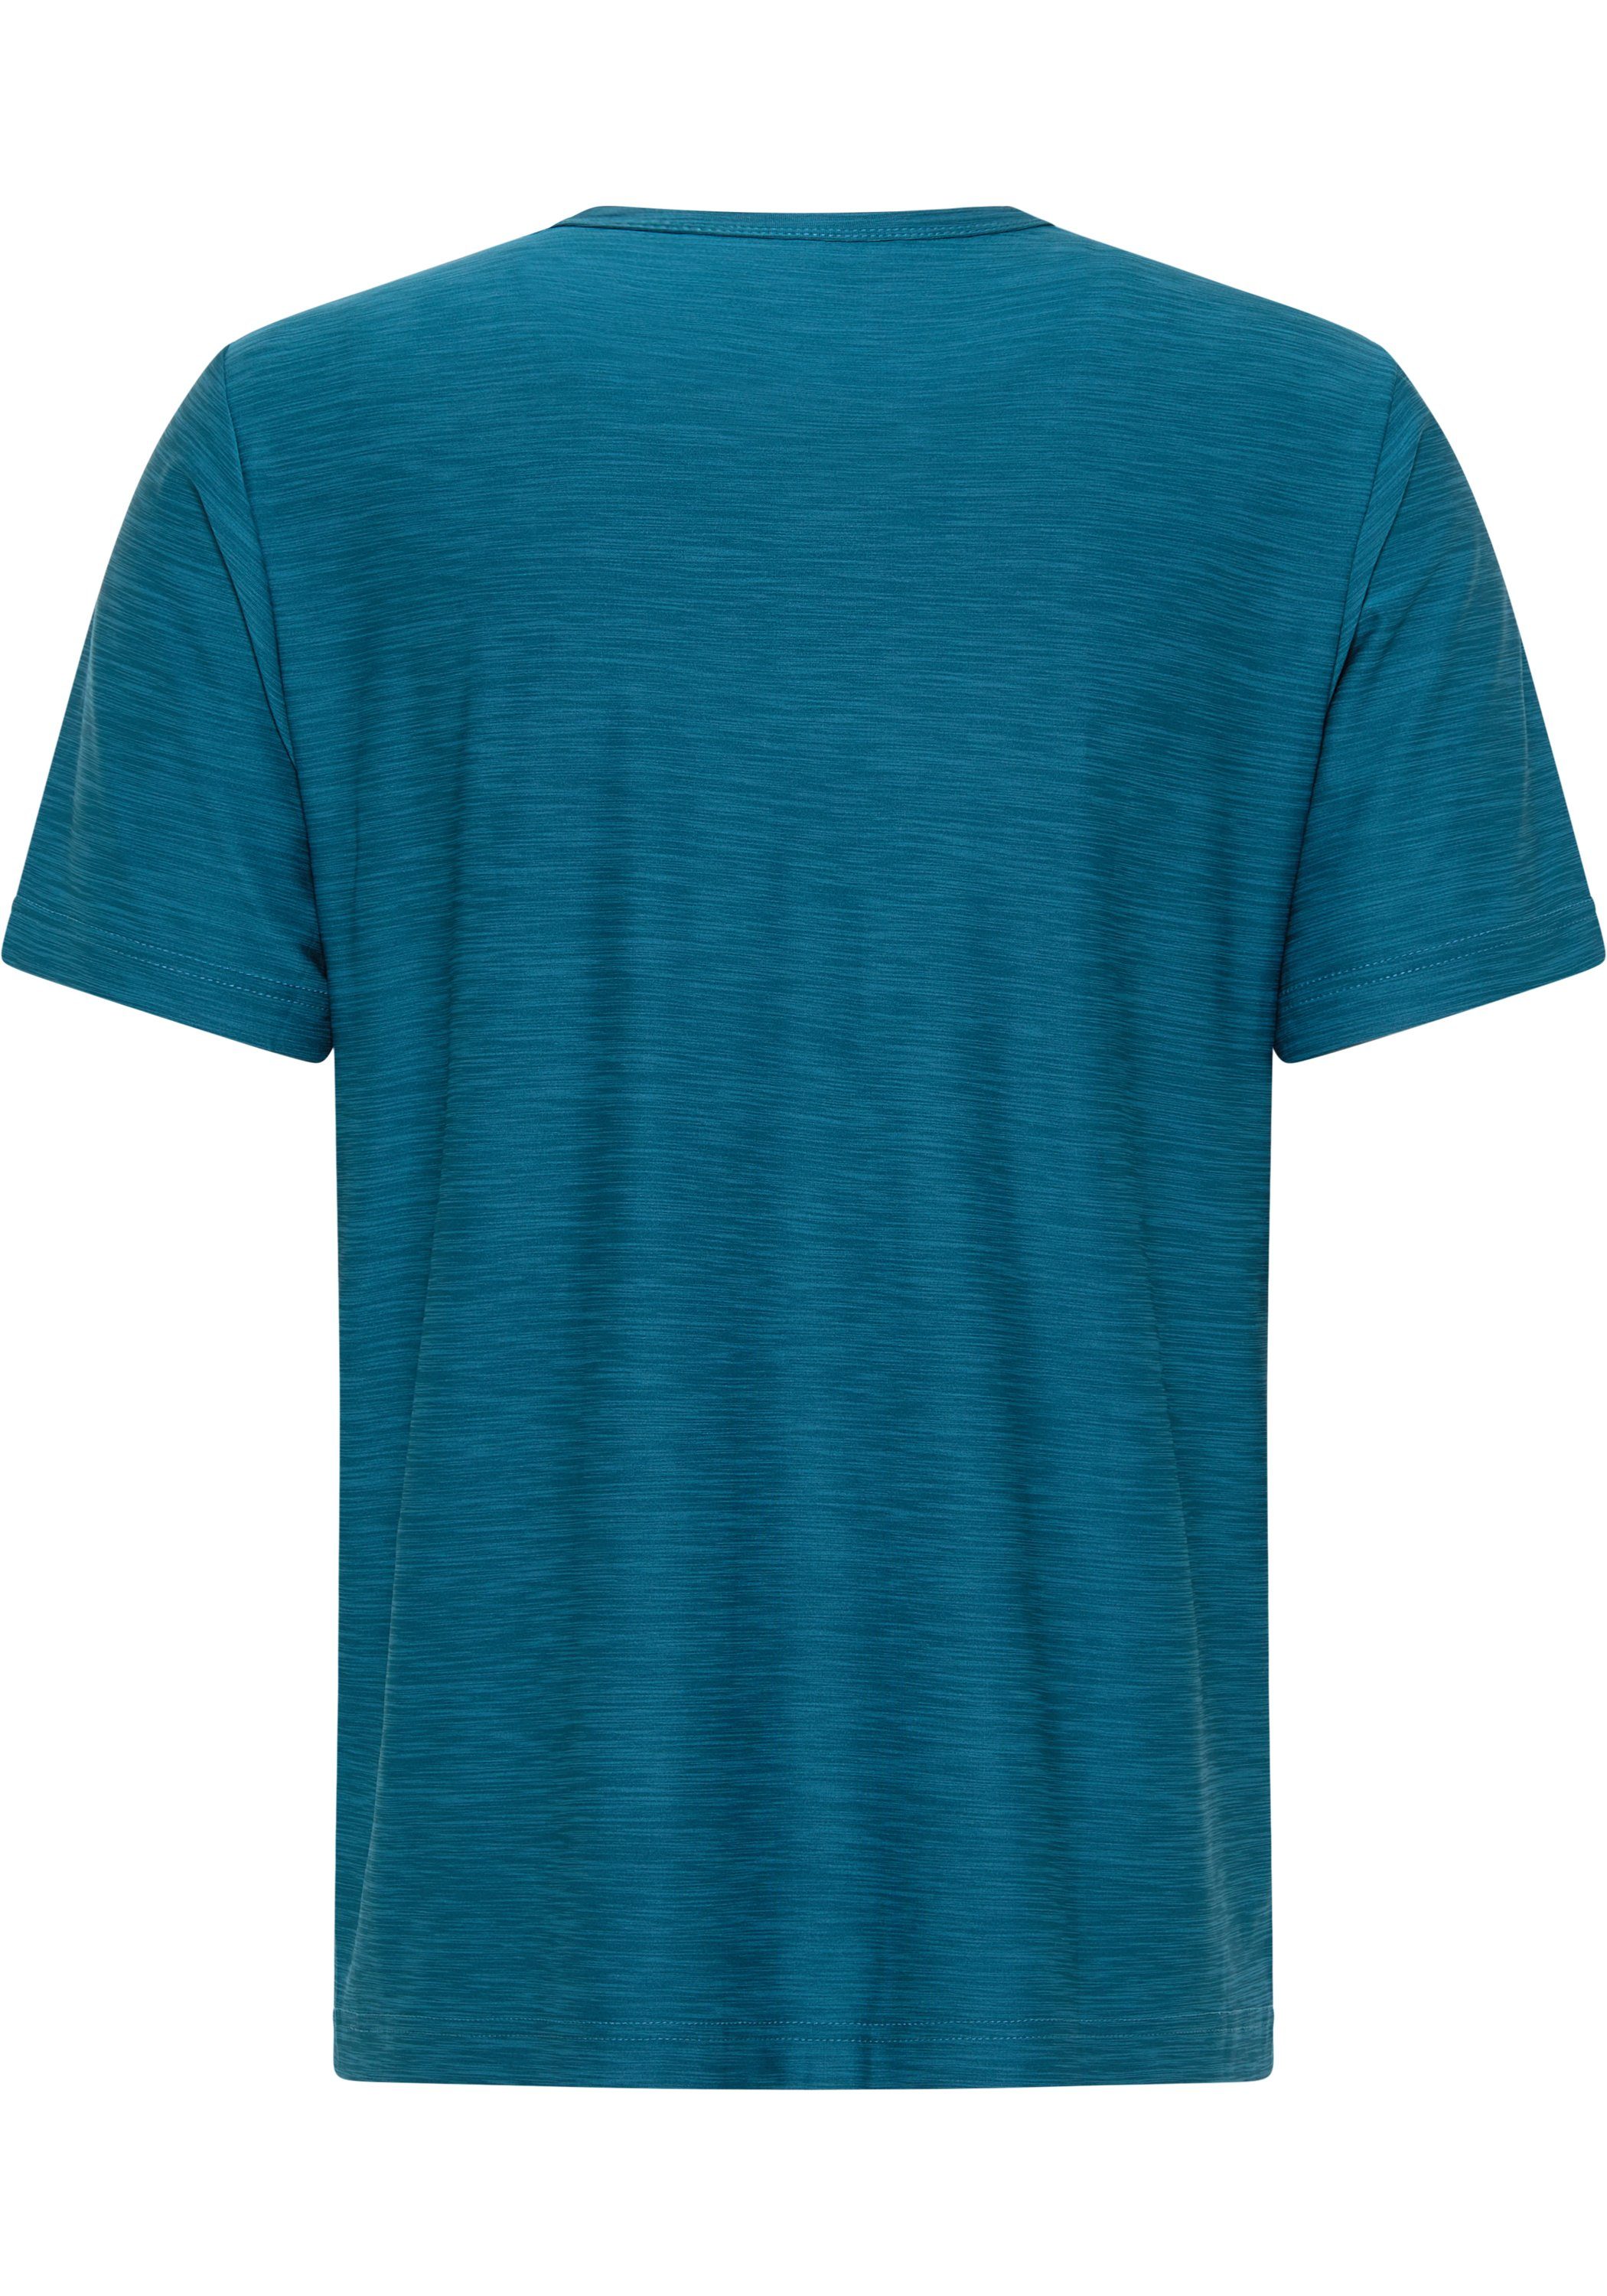 JOY & VITUS T-Shirt turquoise FUN T-Shirt Sportswear deep Joy melange